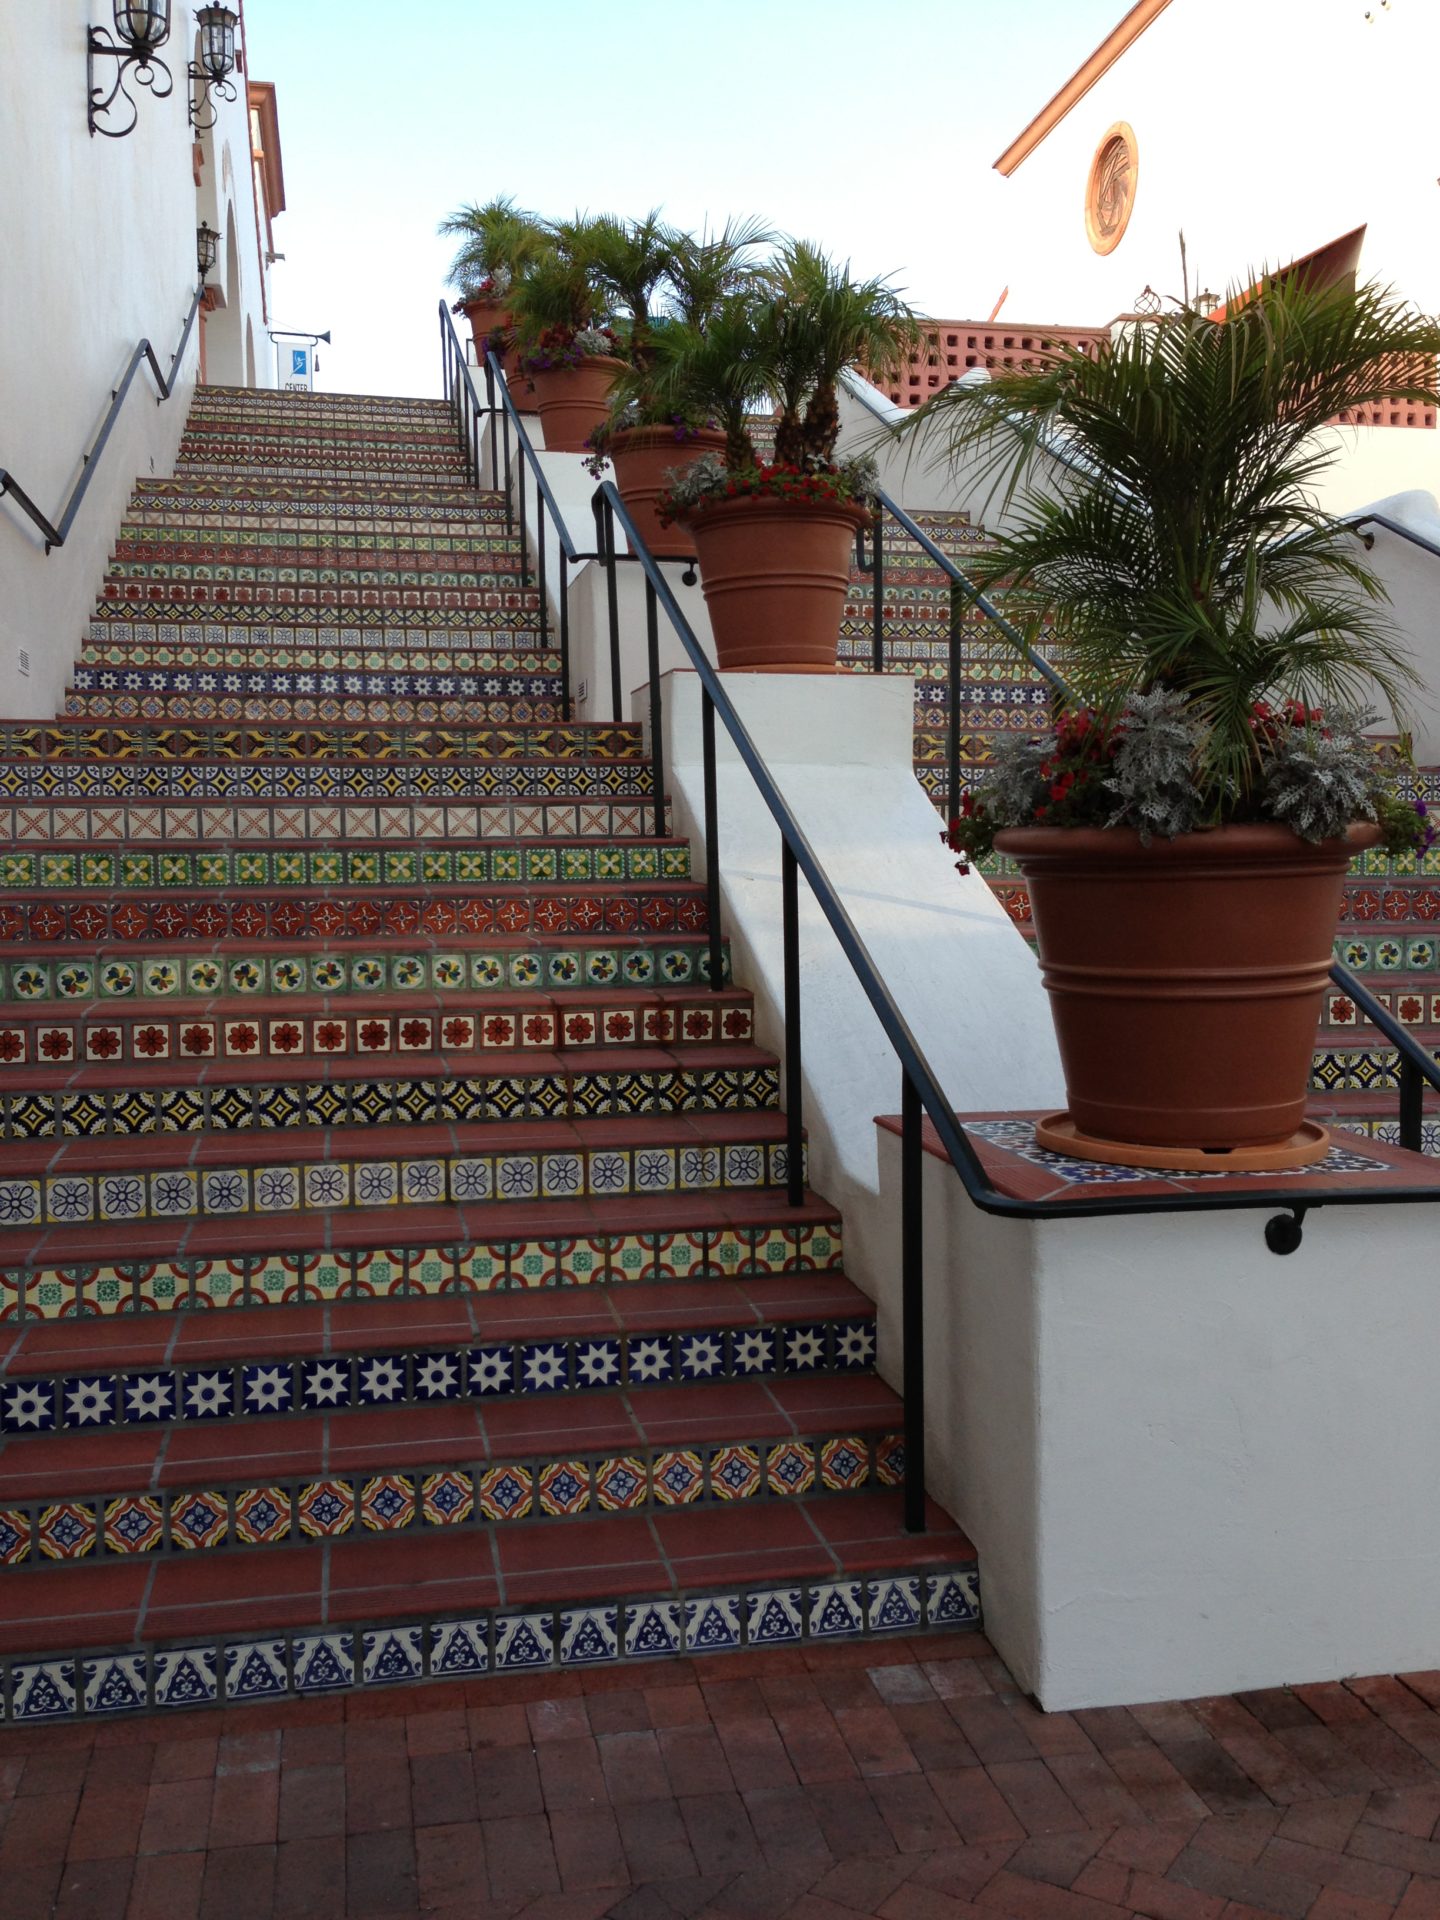 Tiled Spanish Steps Santa Barbara